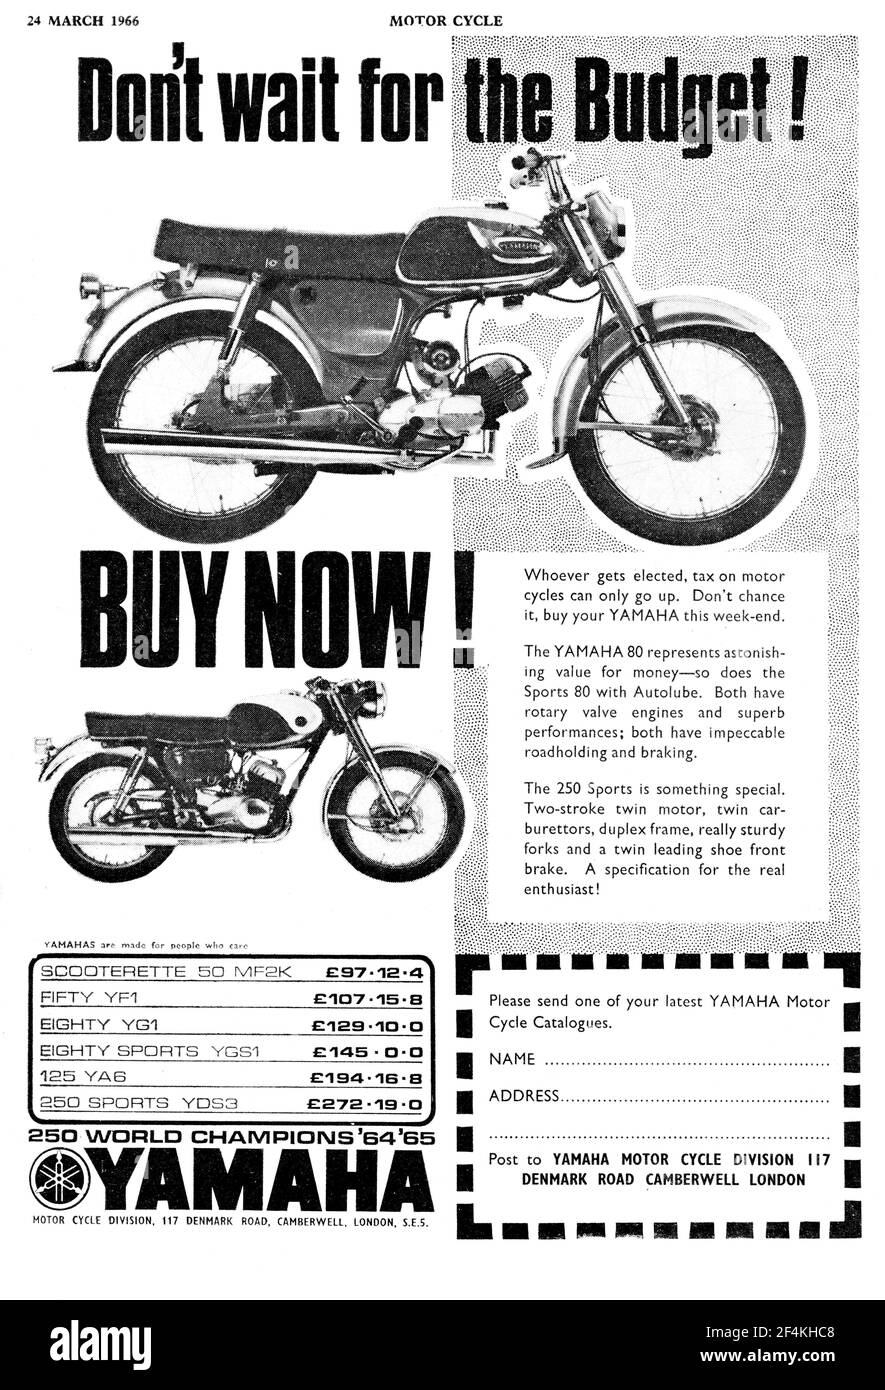 1960s yamaha motorcycles